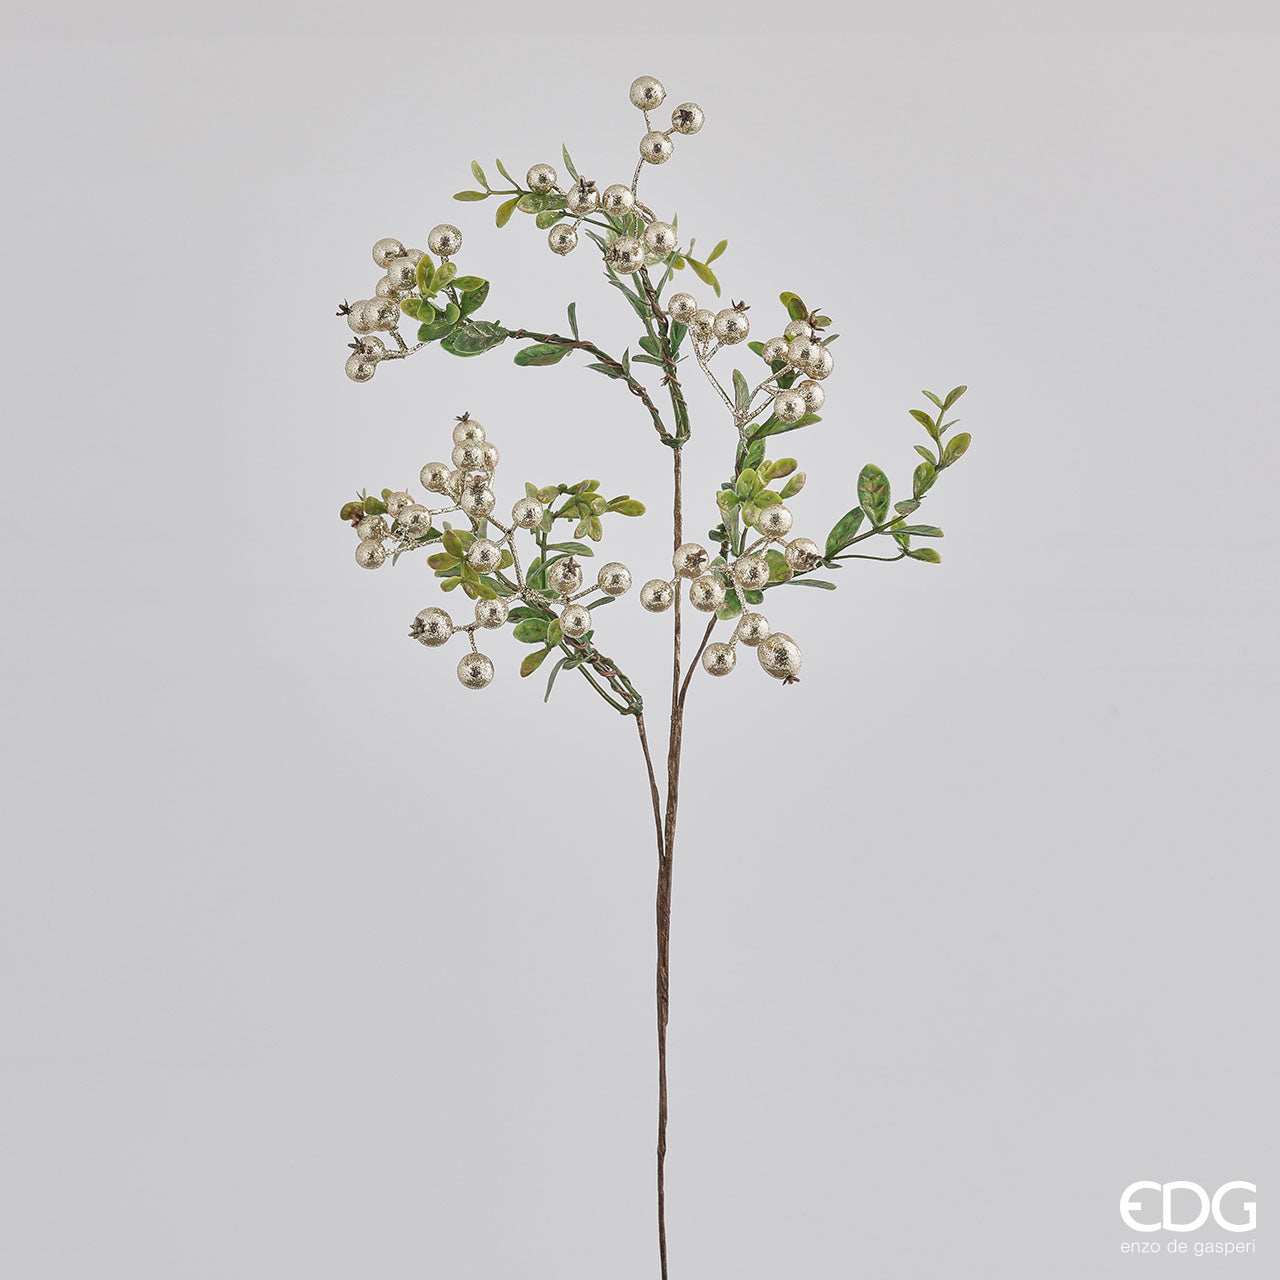 Rametto di Cotoneaster con bacche oro cm 46. Inserito in una composizione di fiori, questo ramo dà volume e un aspetto più raffinato.